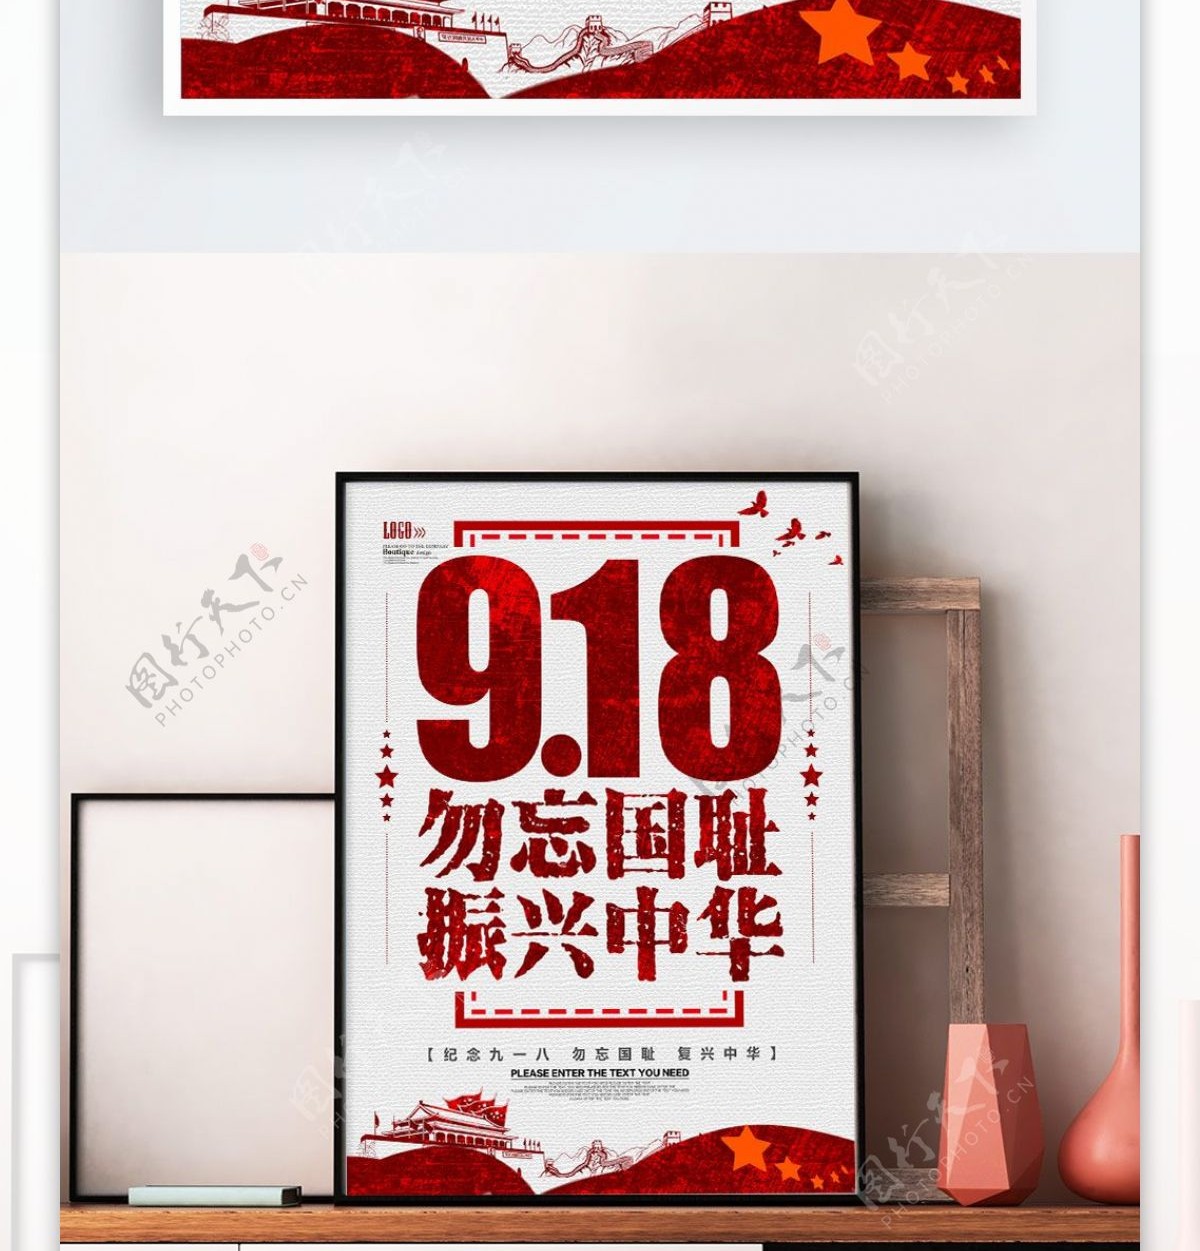 纪念918勿忘国耻振兴中华海报